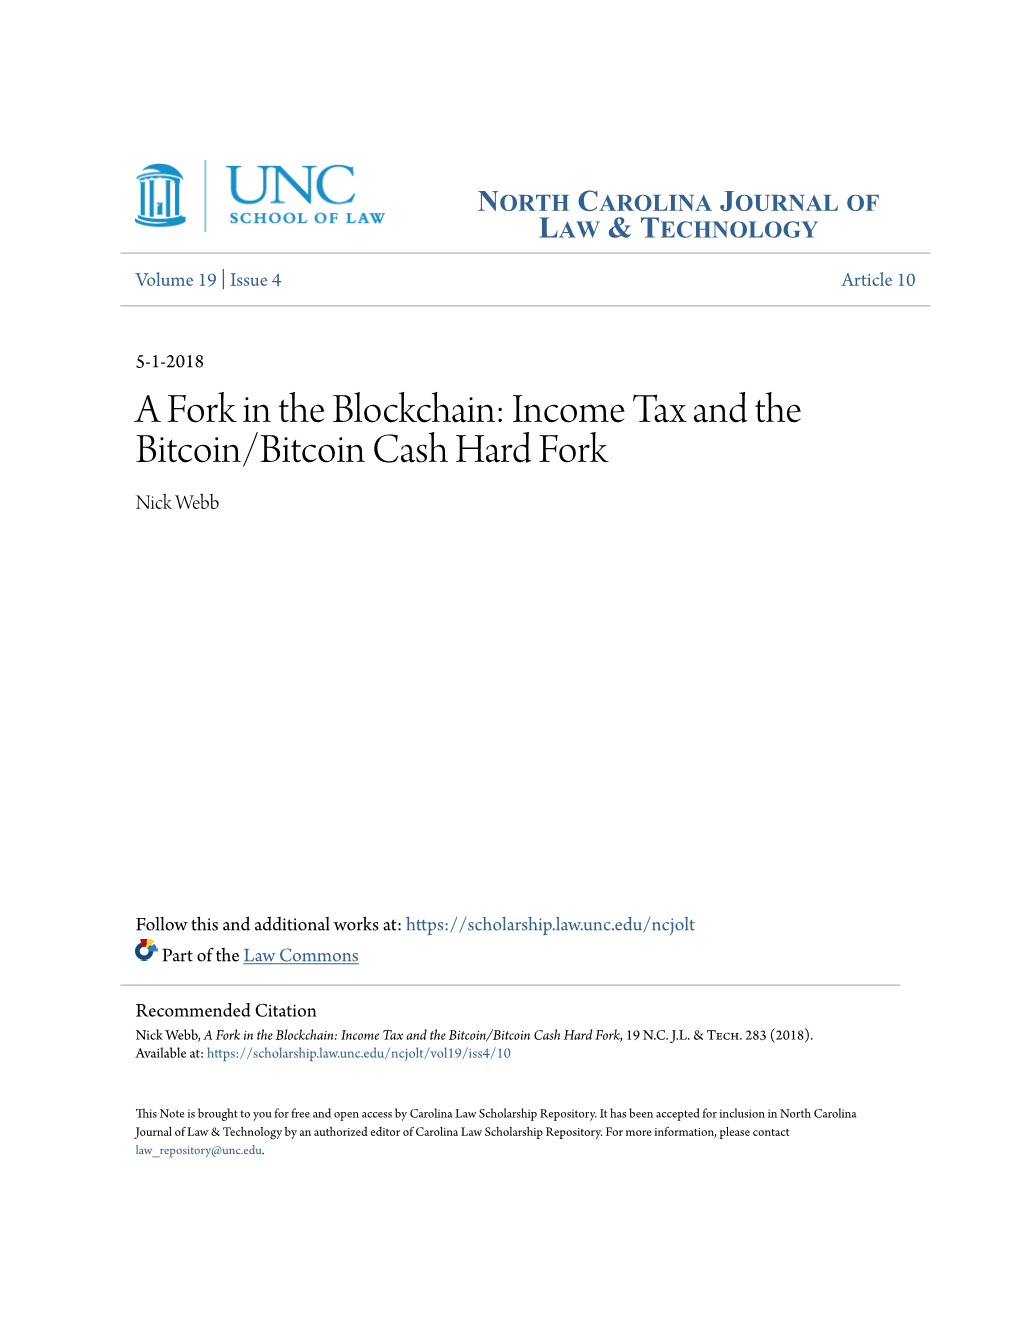 Income Tax and the Bitcoin/Bitcoin Cash Hard Fork Nick Webb